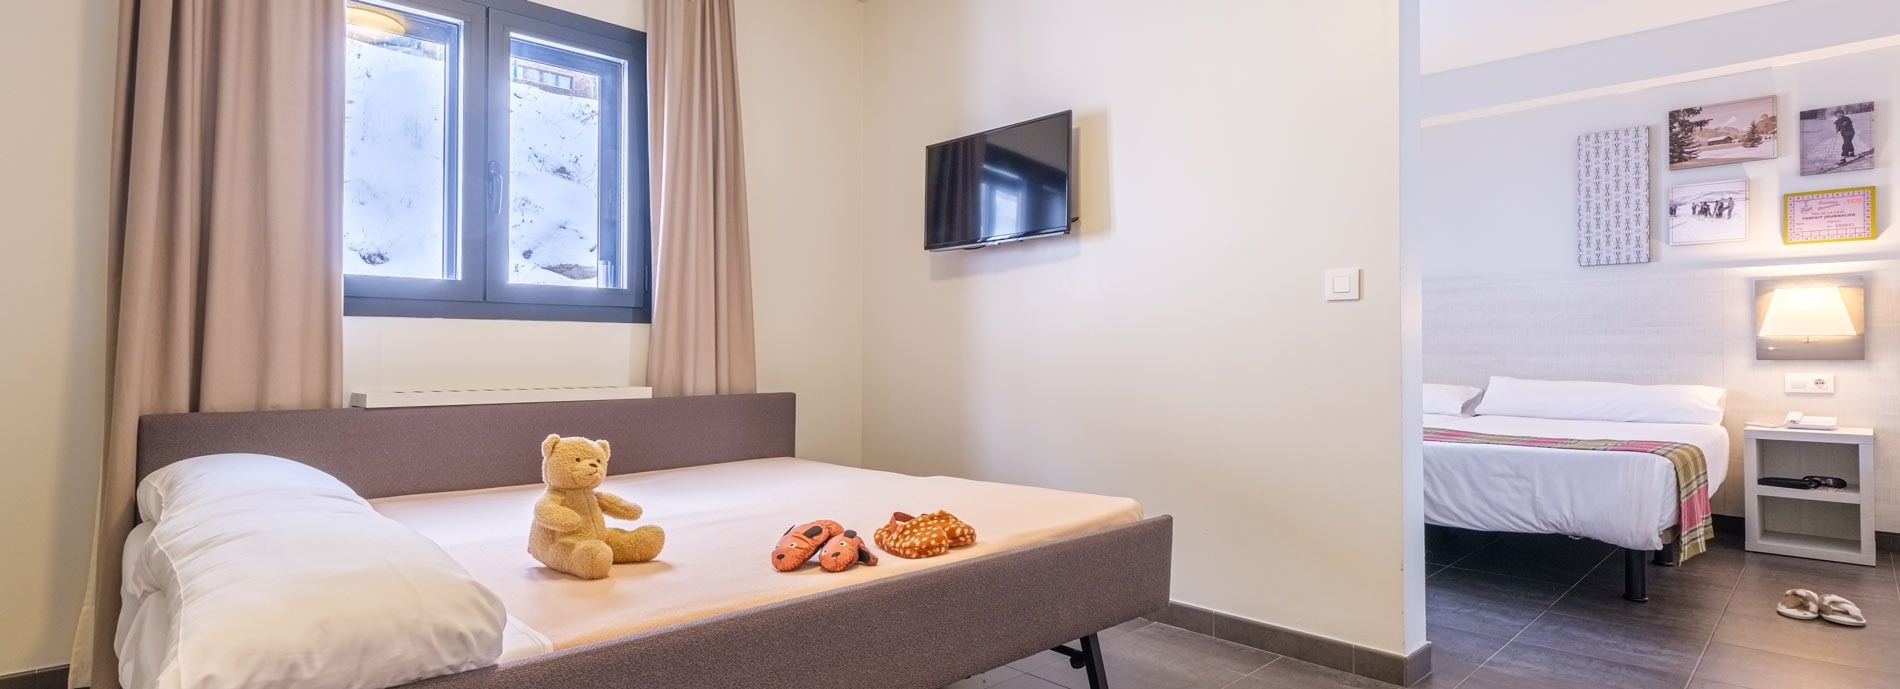 ein Hotelzimmer mit zwei Betten und einem Fernseher